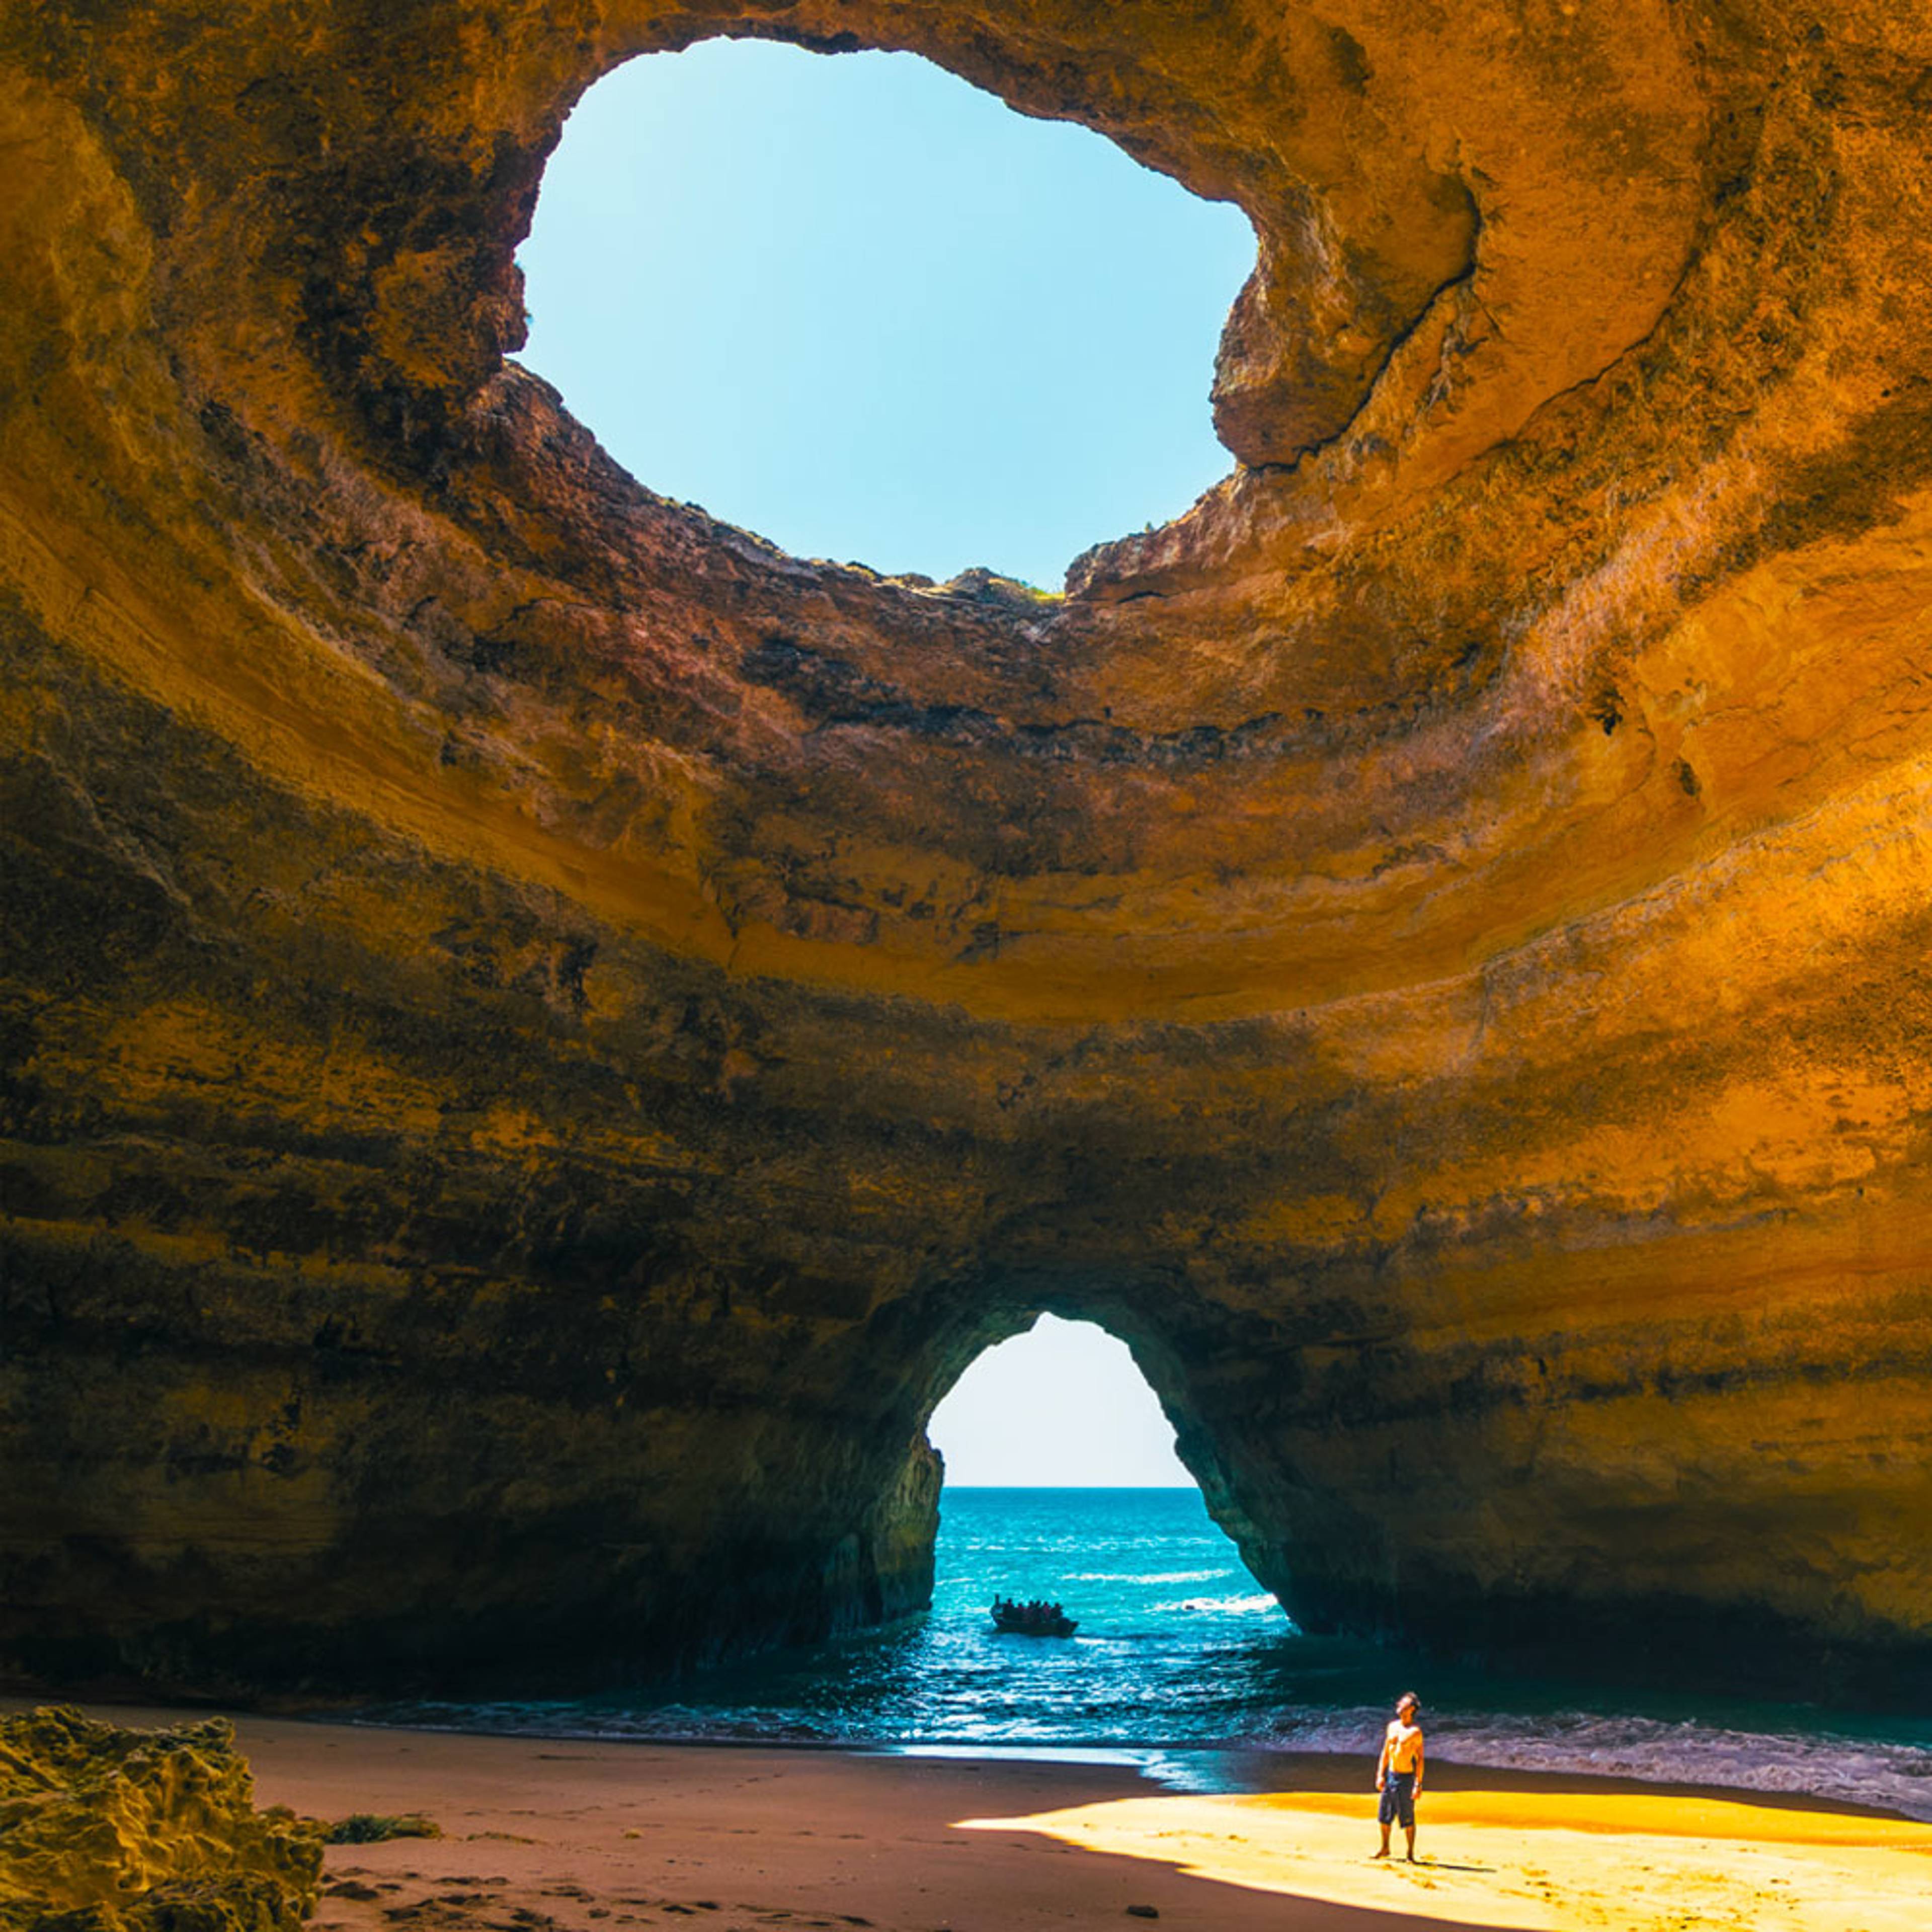 Découvrez les plus belles plages lors de votre voyage au Portugal 100% sur mesure